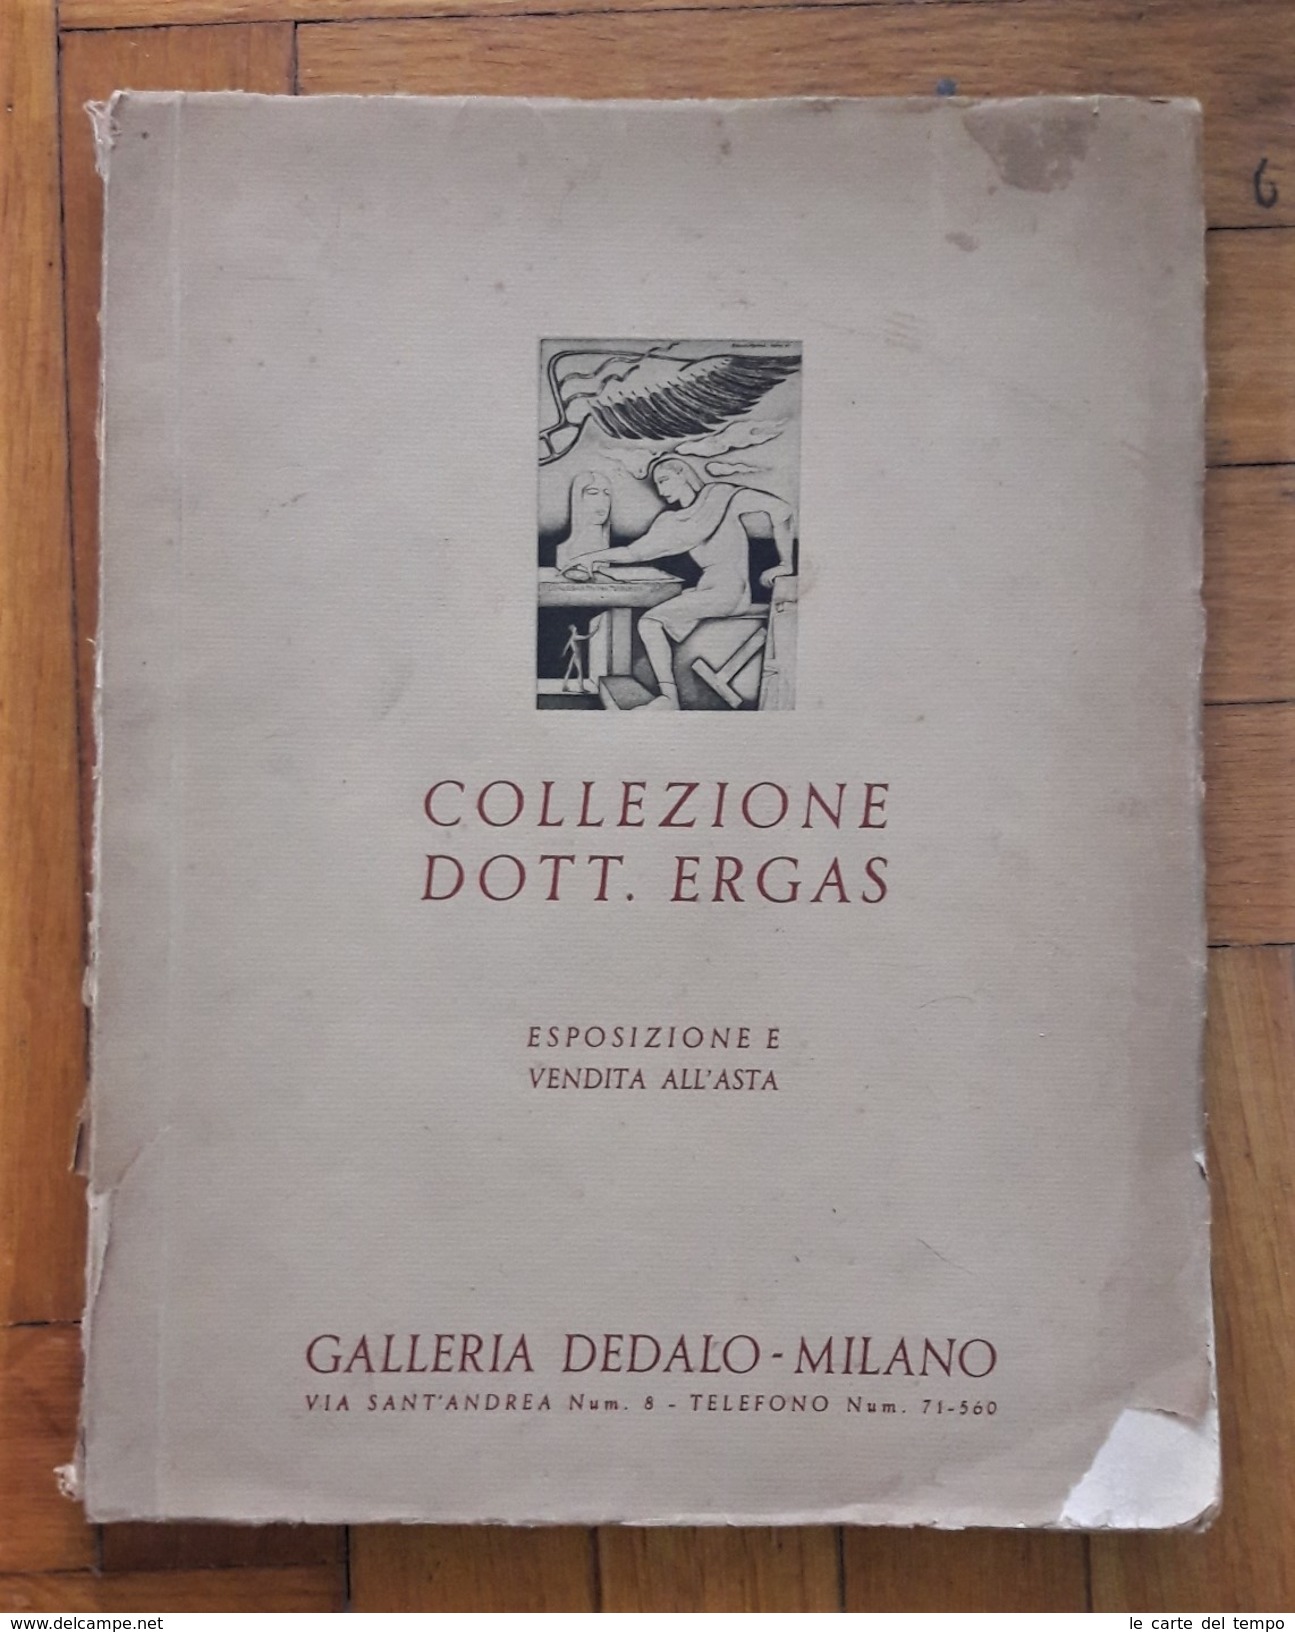 Catalogo Collezione Dott. Ergas Esposizione E Vendita All'asta. Galleria Dedalo - Milano Marzo 1934 - Arte, Architettura